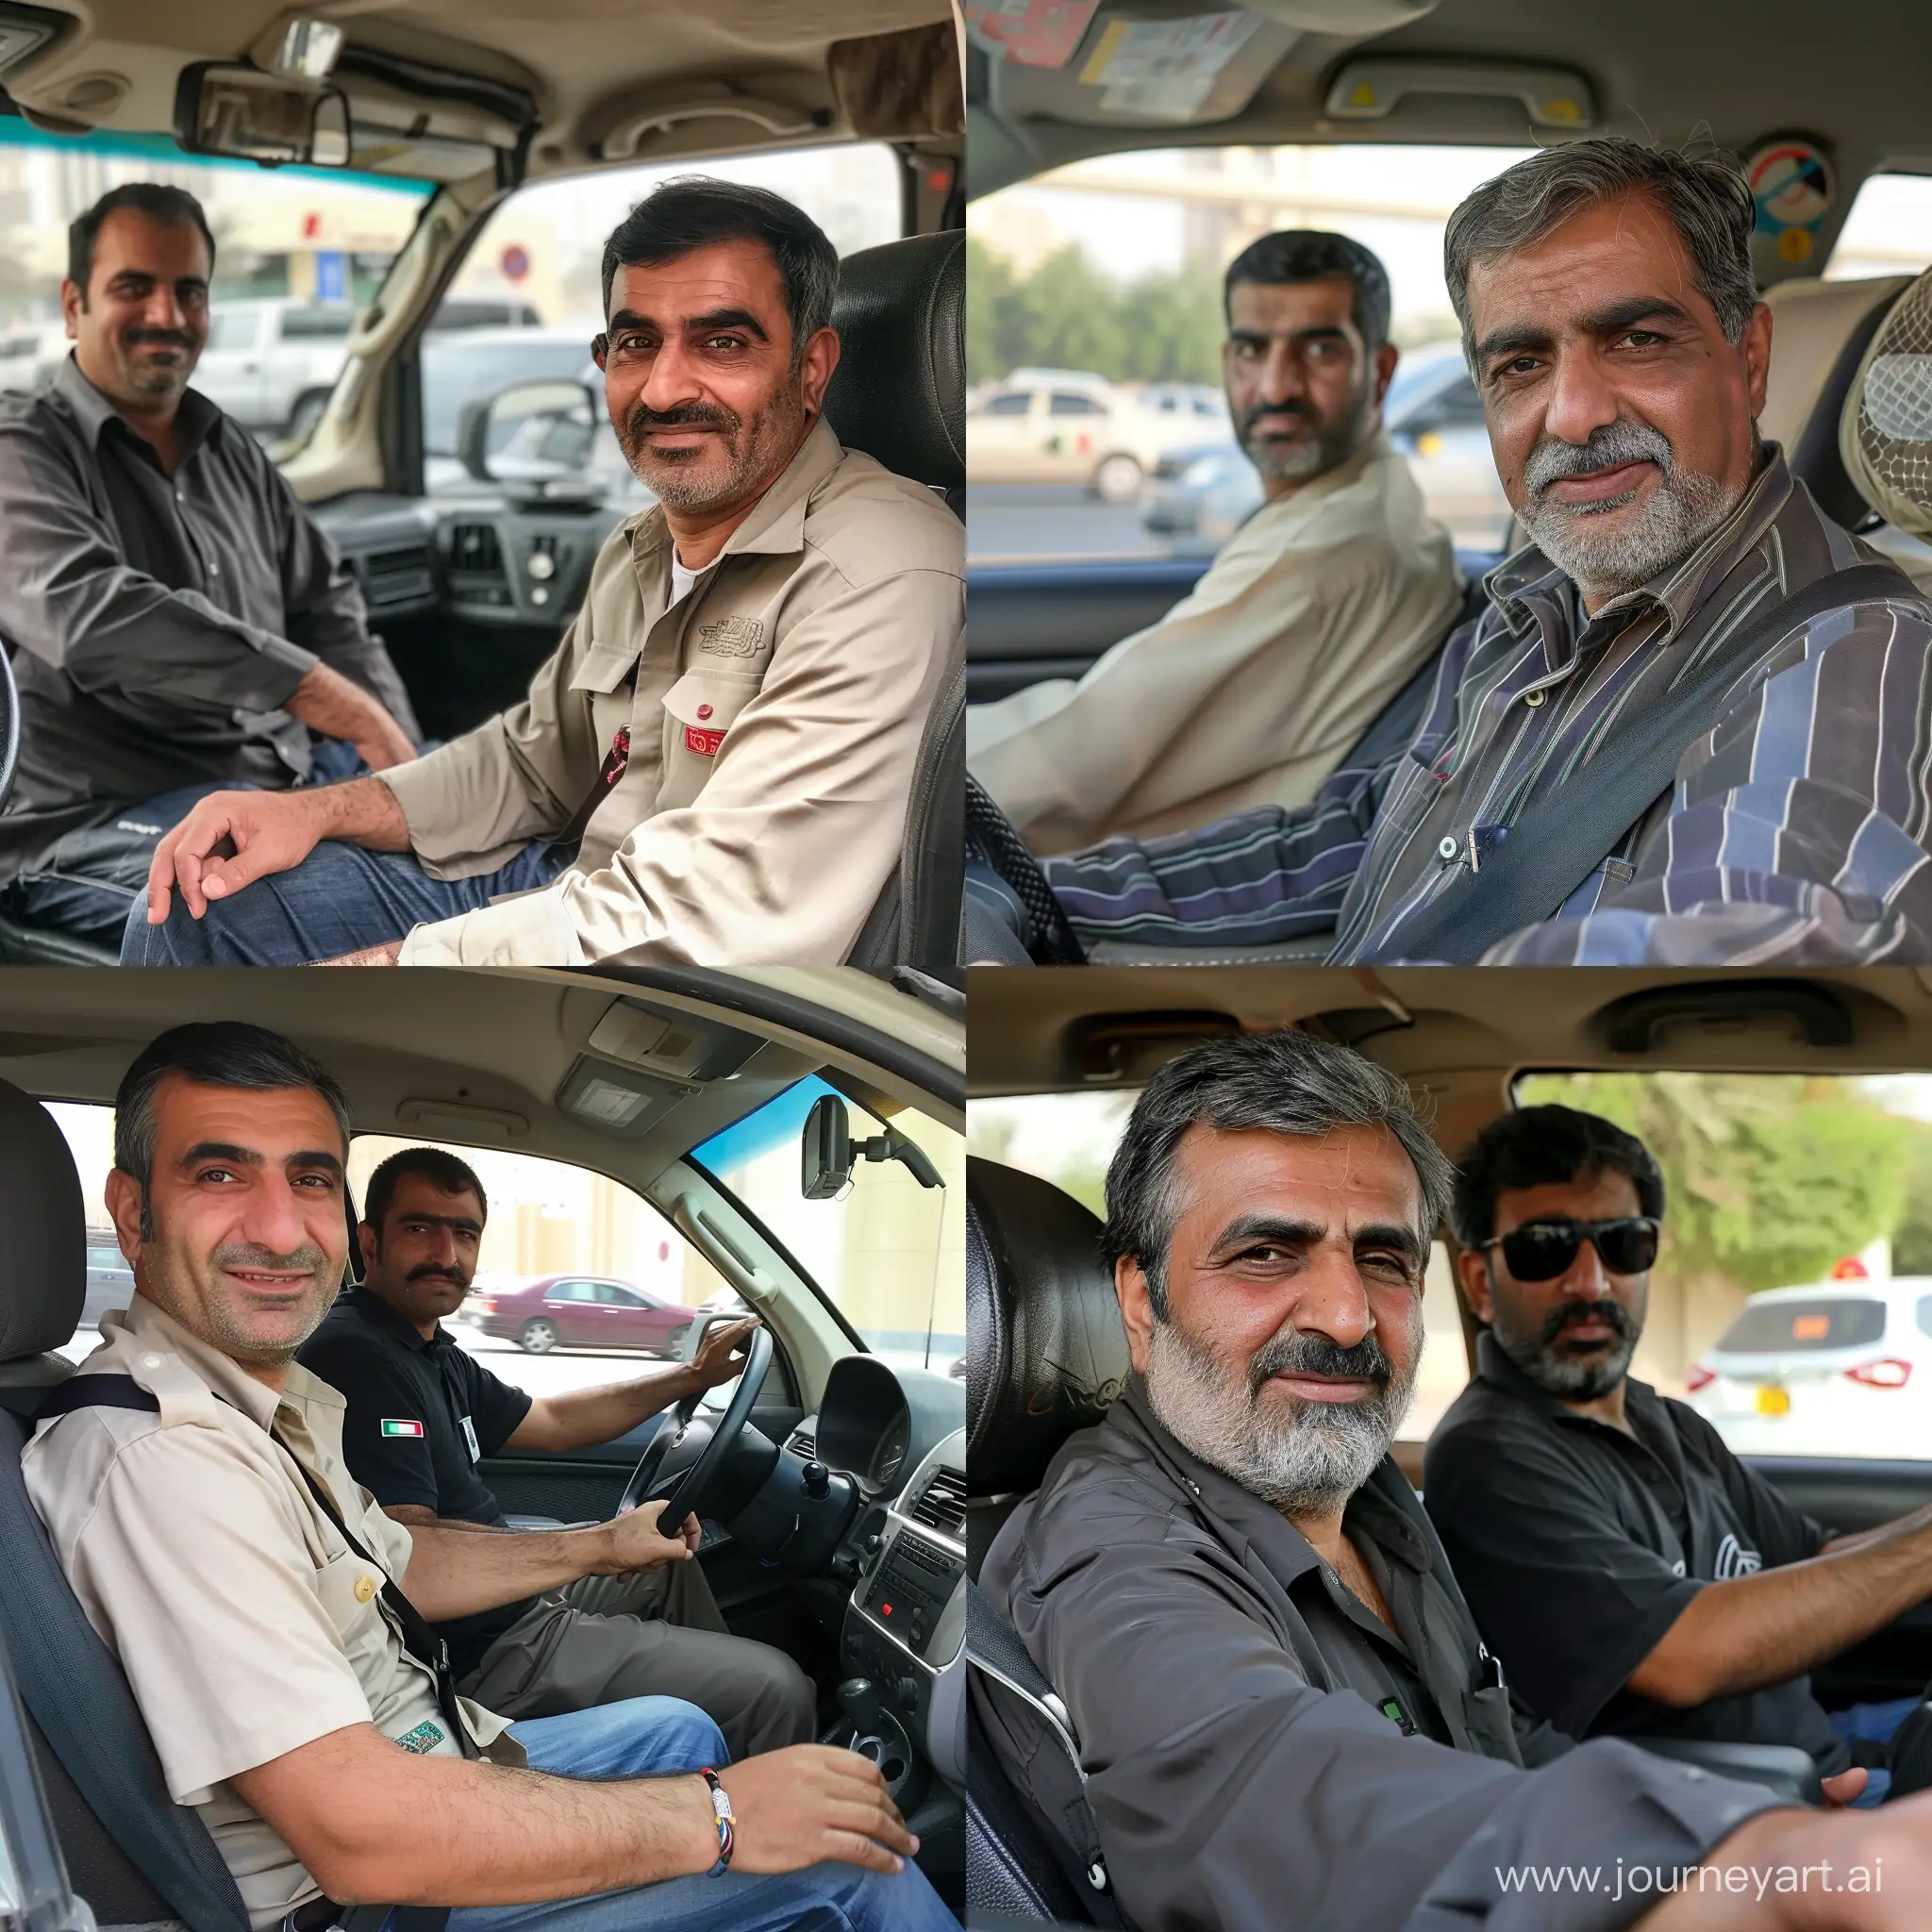 Иранские парни работают таксистами в Дубае